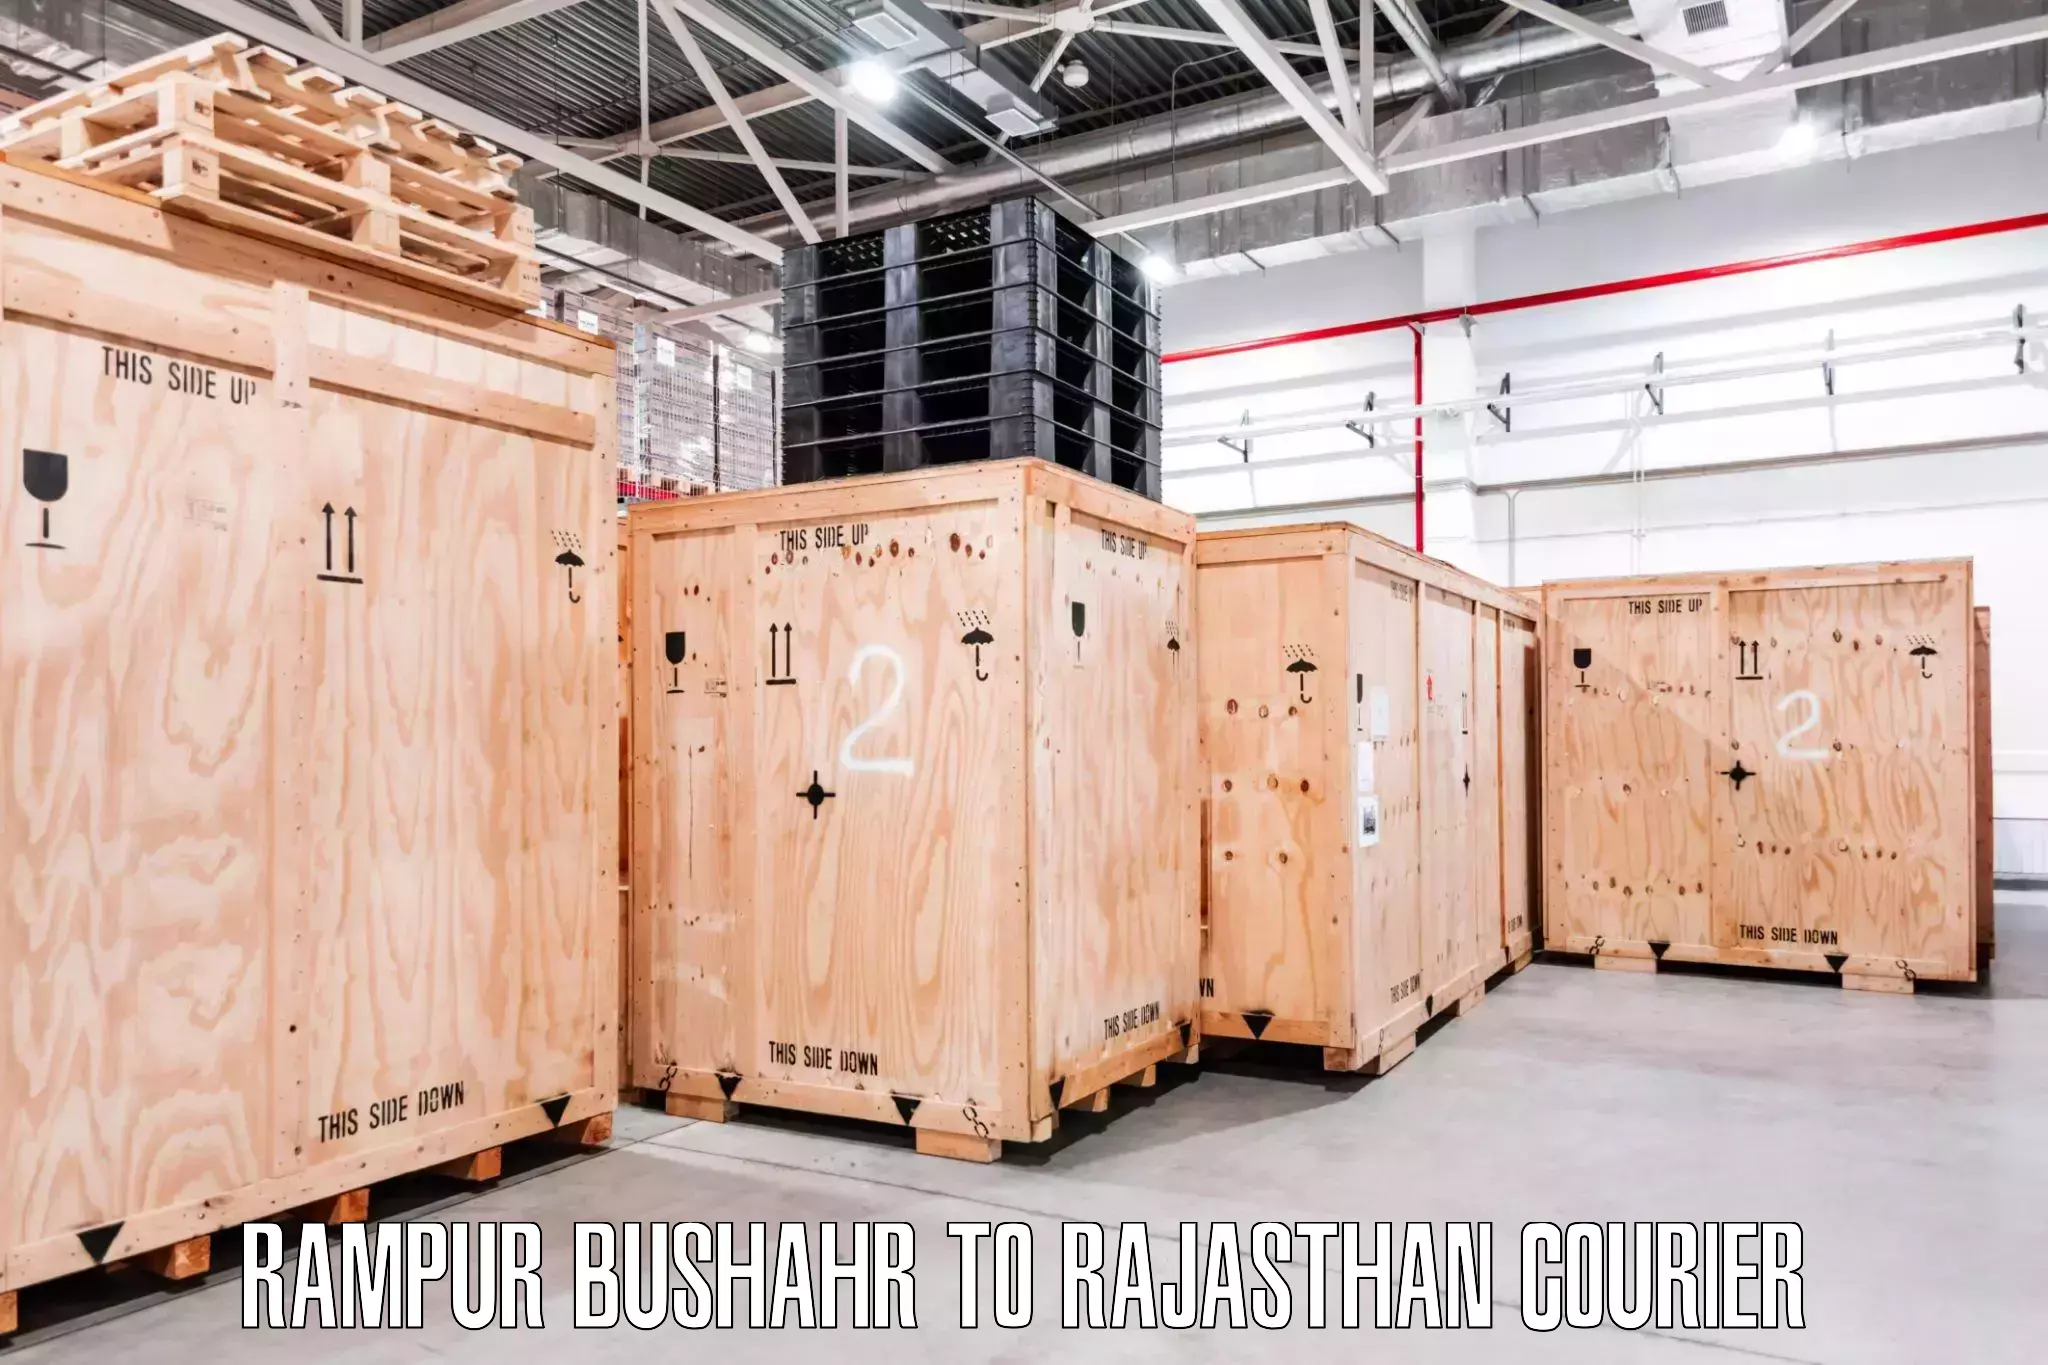 Skilled furniture transport in Rampur Bushahr to Chittorgarh